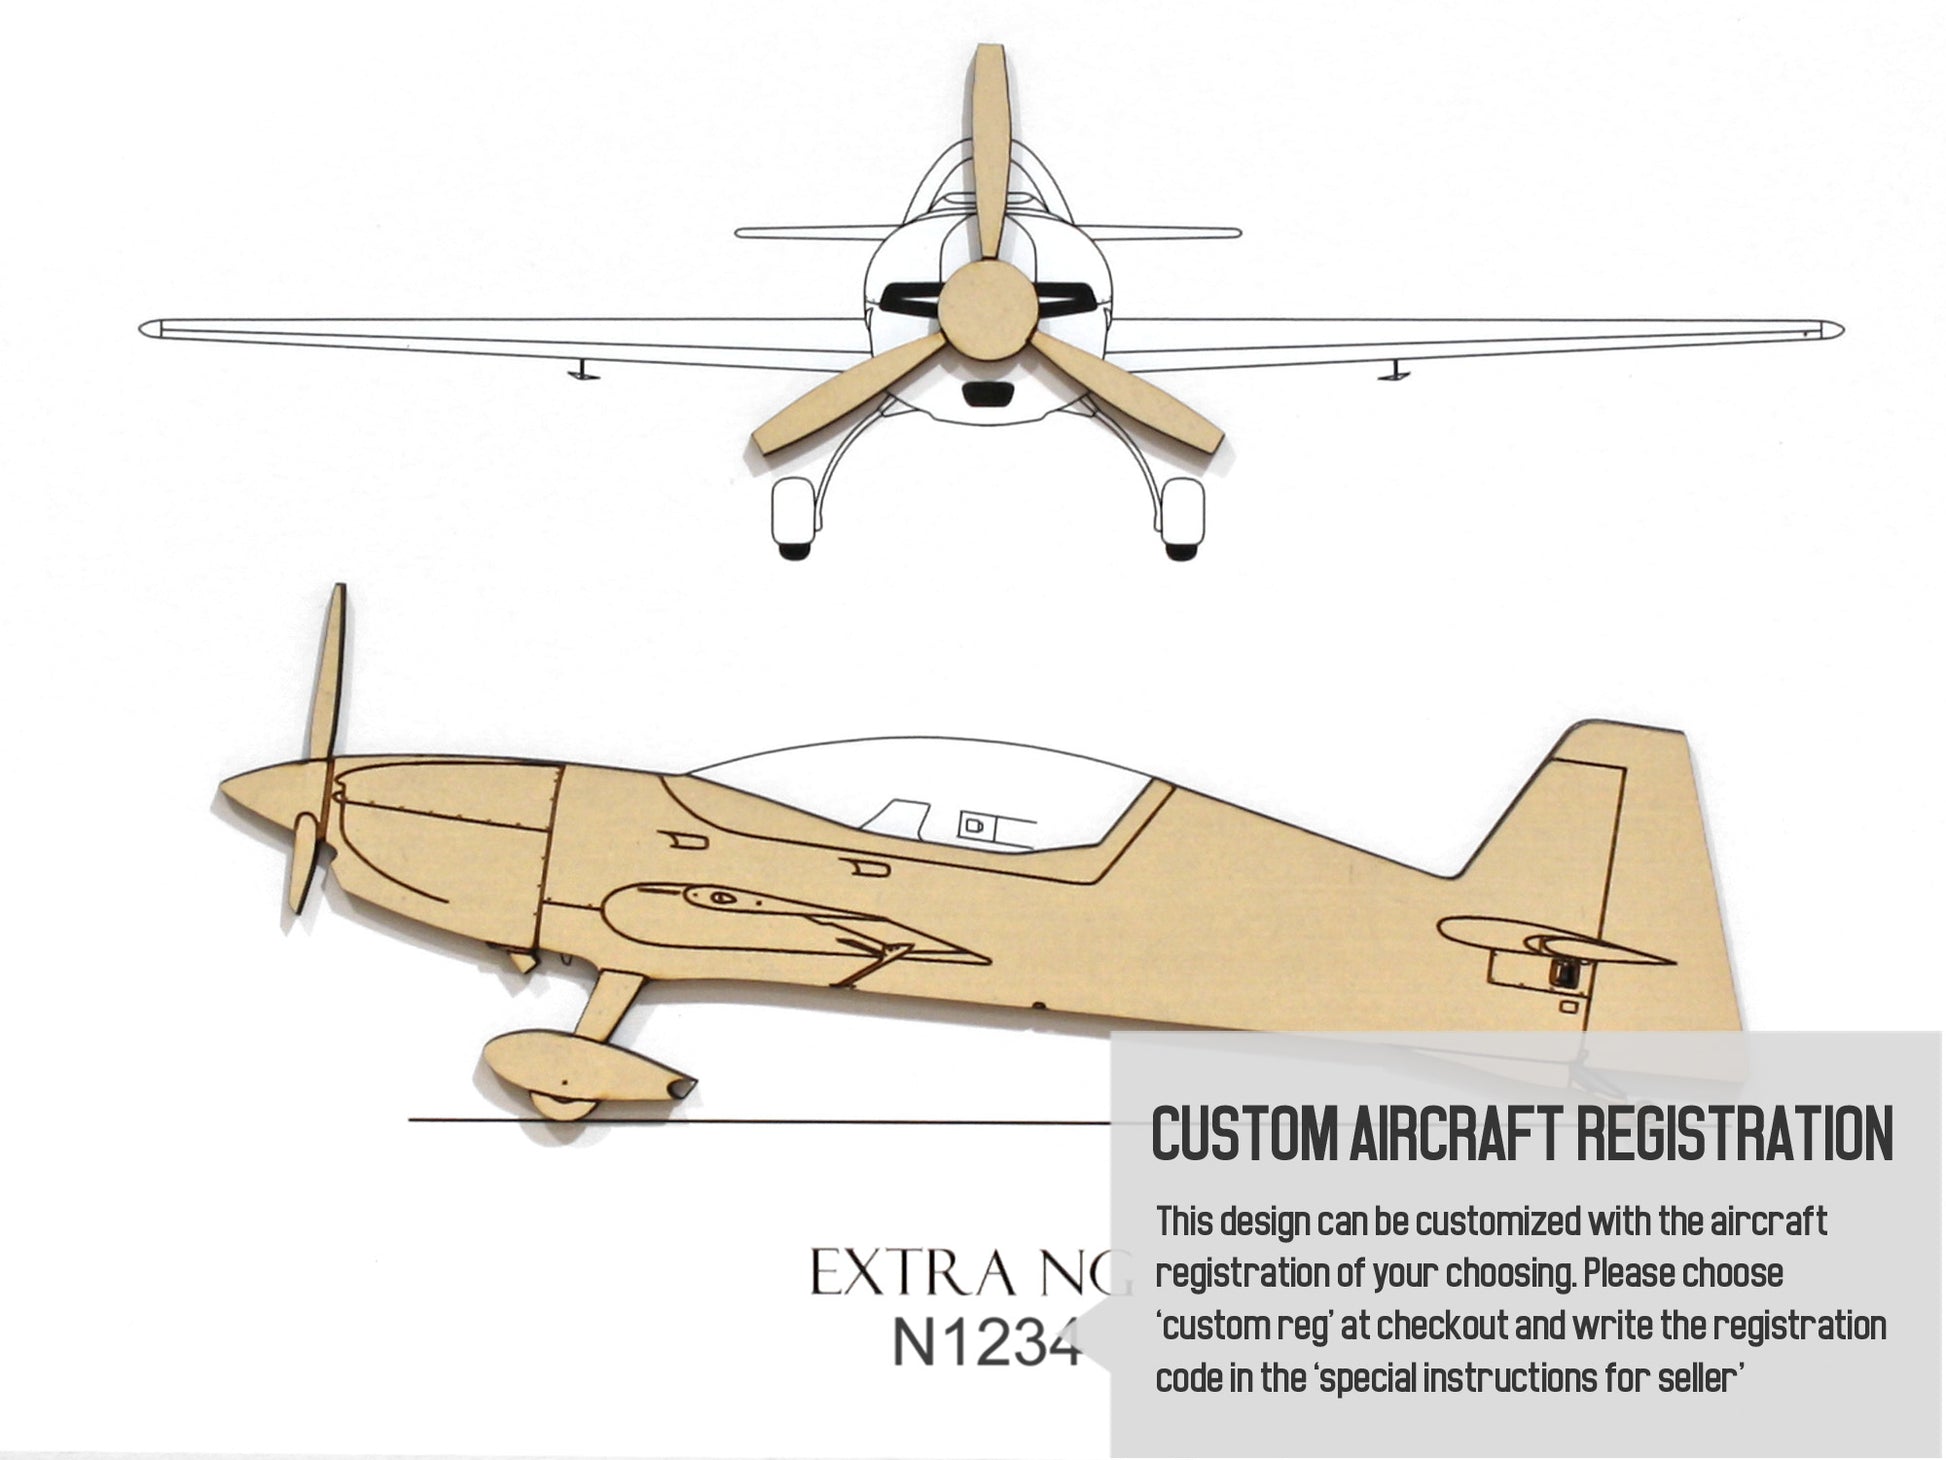 Extra NG custom aviation art